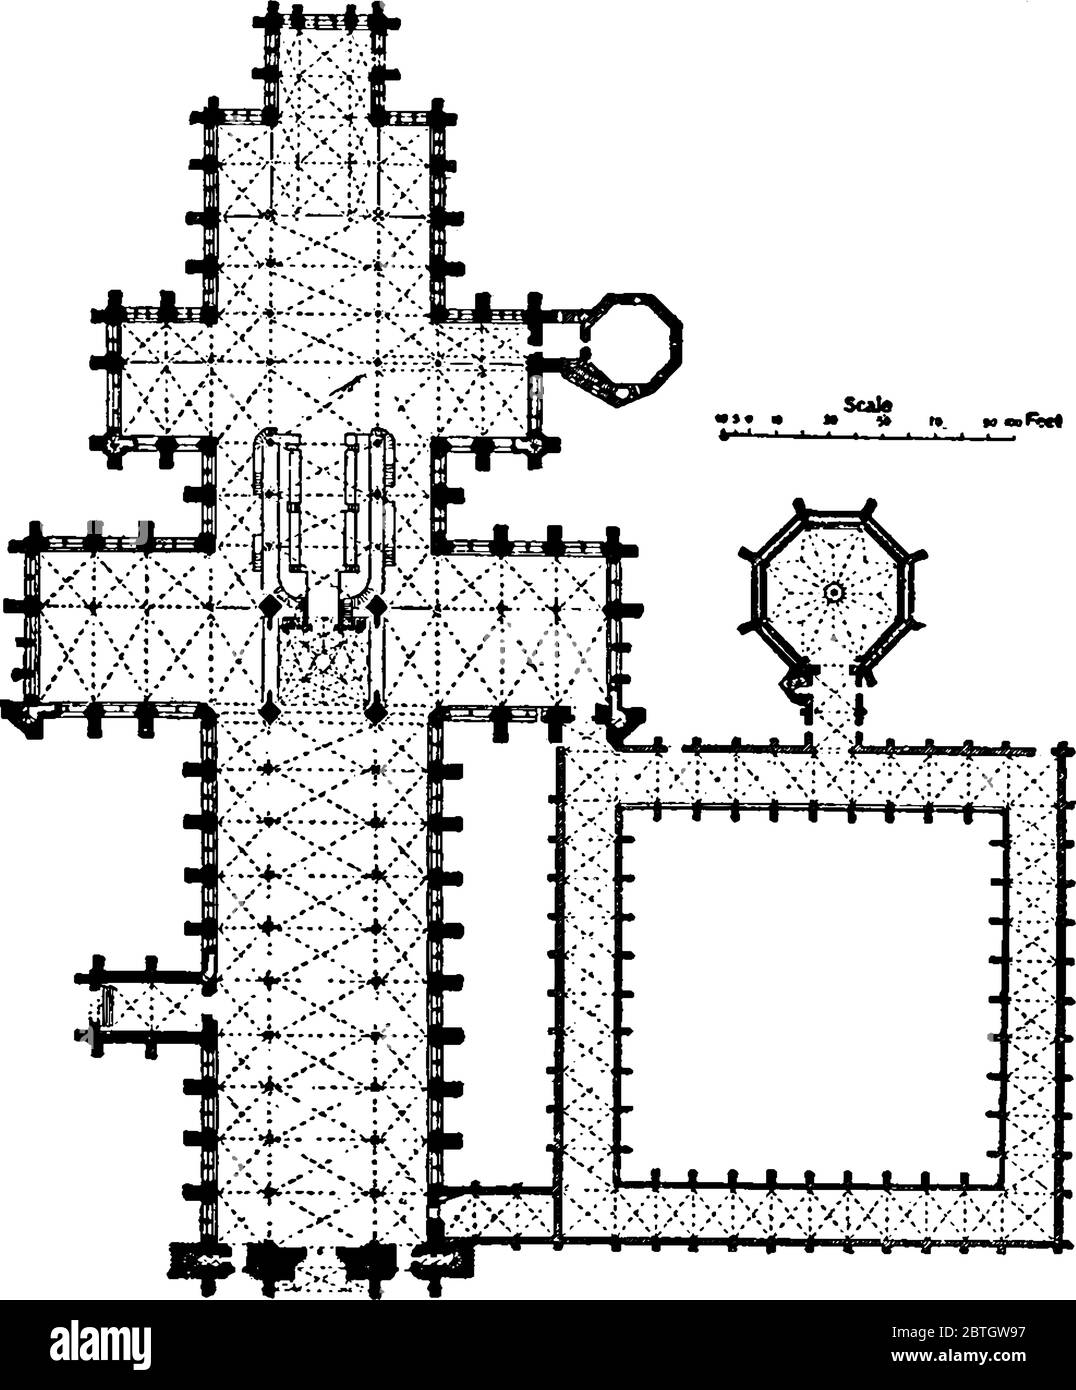 Un'illustrazione della pianta della cattedrale di Salisbury, disegno di linee d'epoca o illustrazione di incisione. Illustrazione Vettoriale